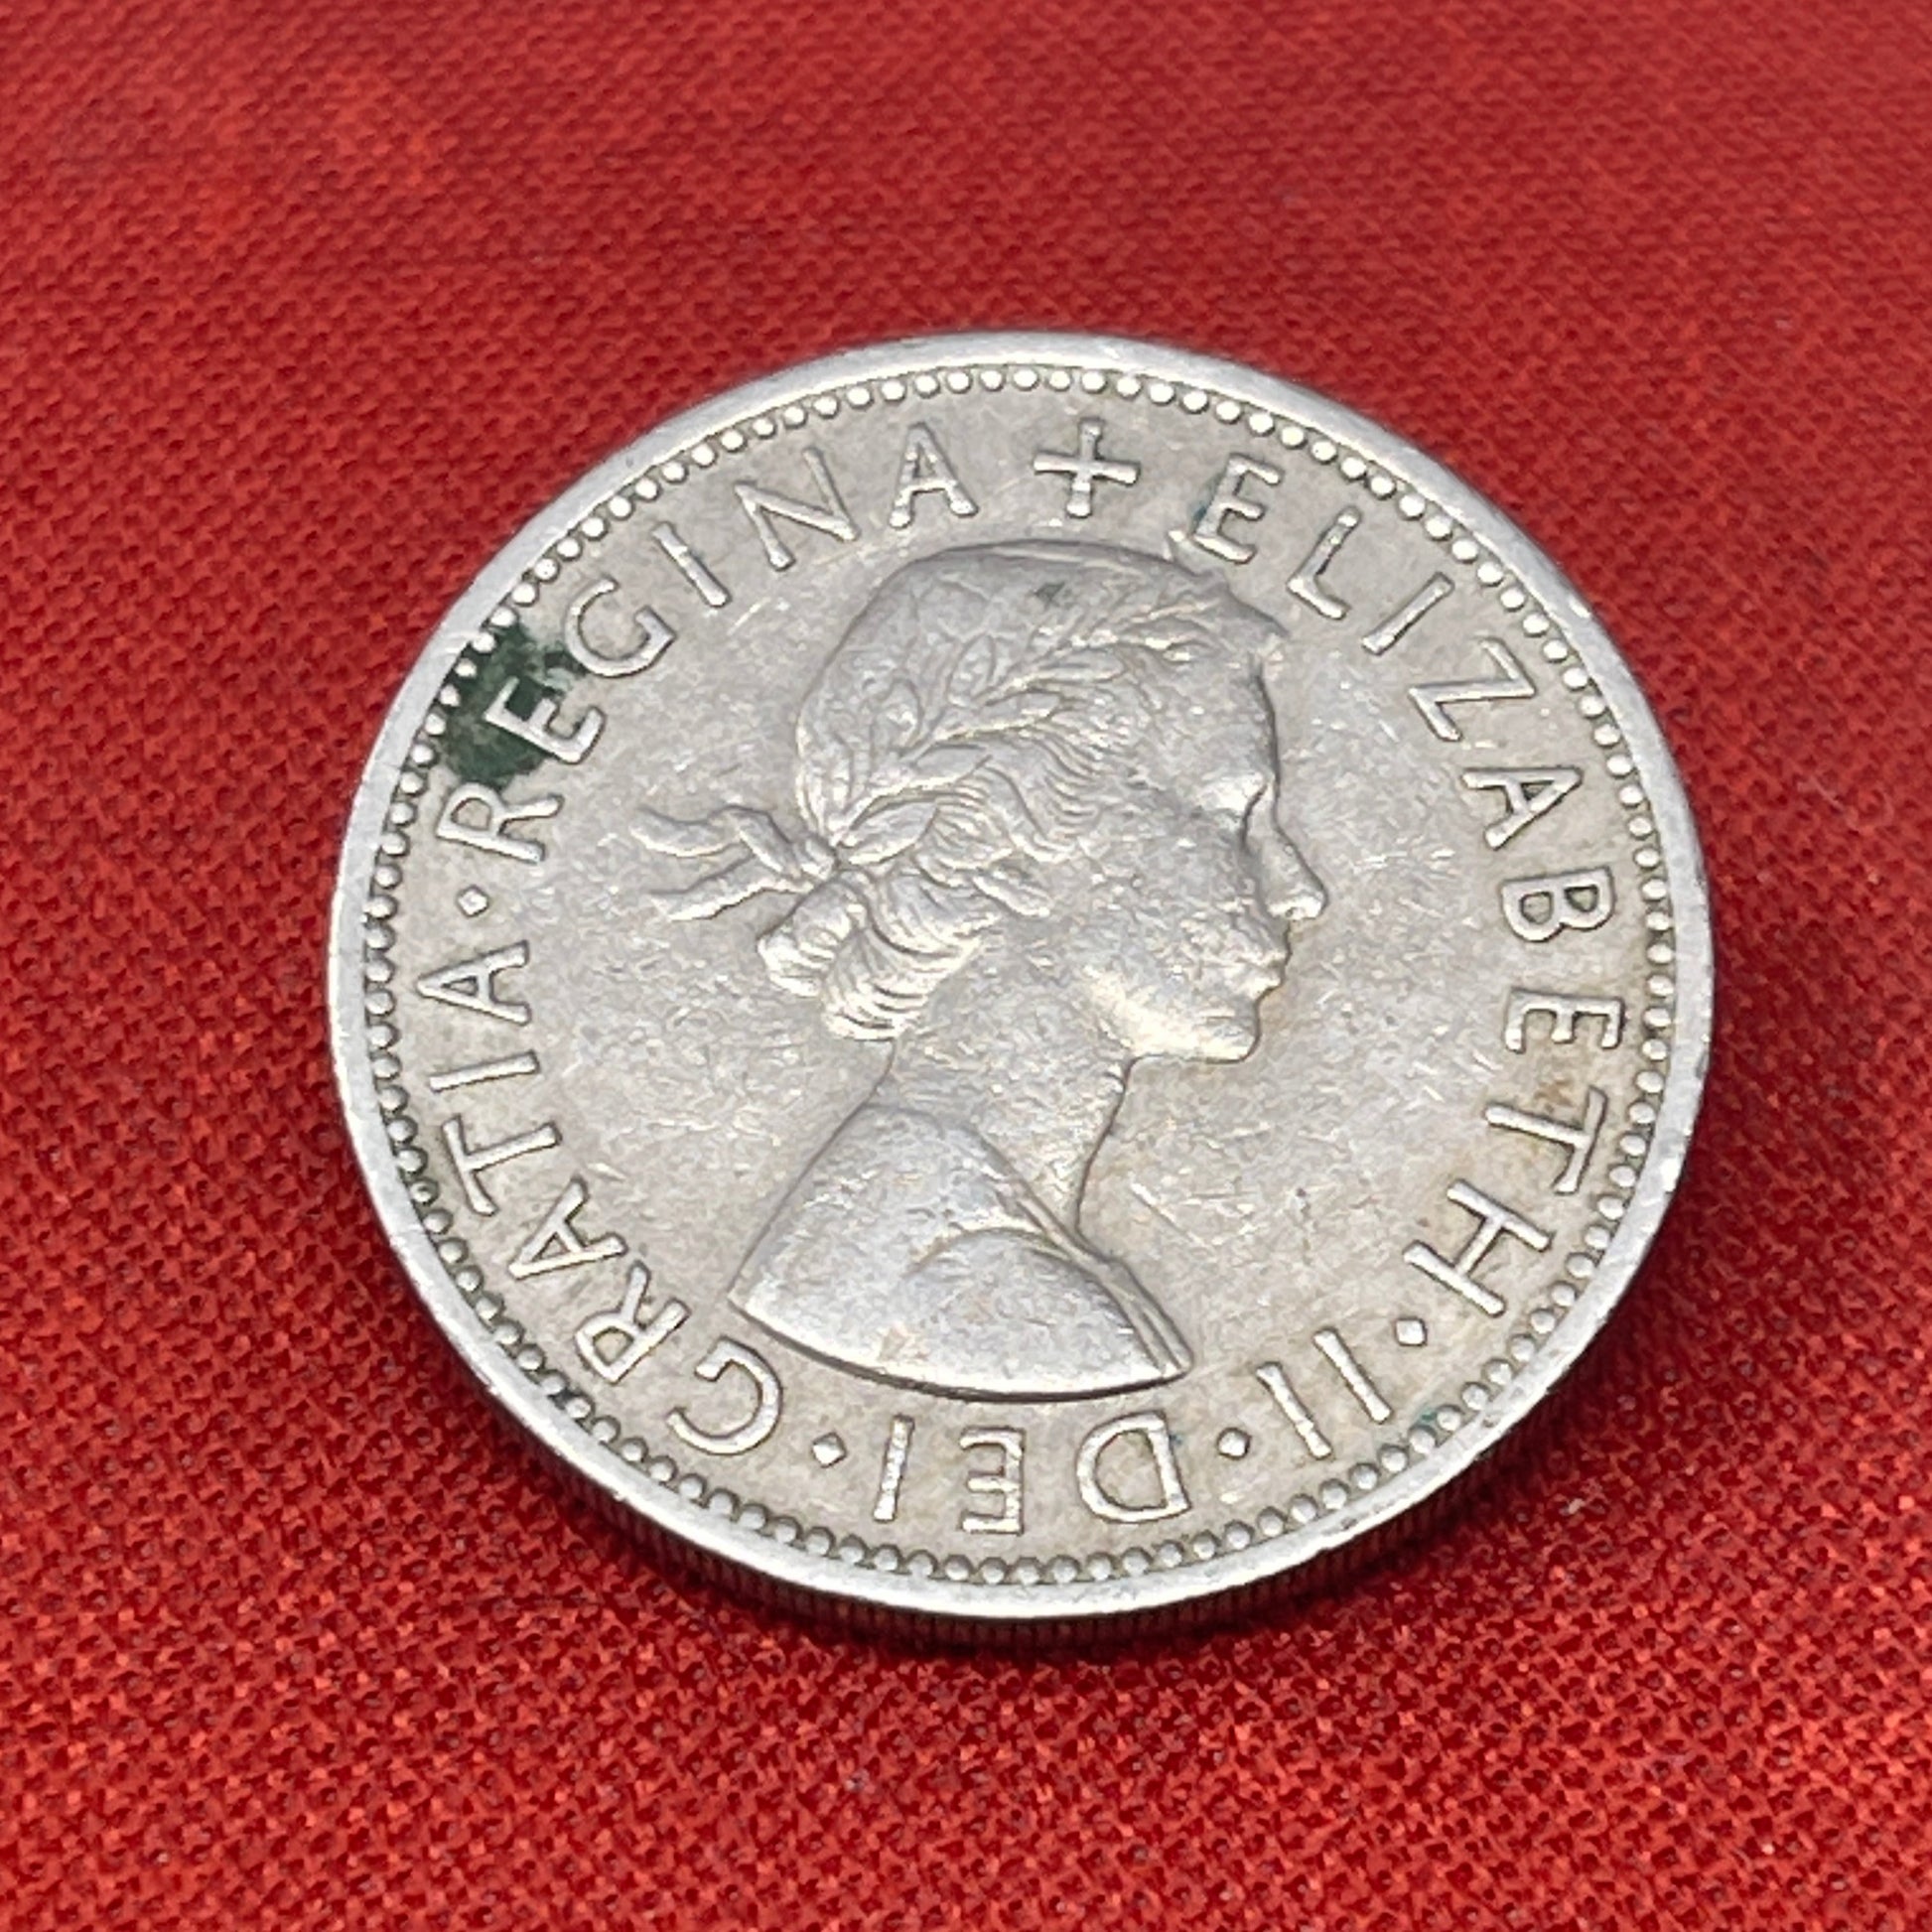 Queen Elizabeth II Two Shilling 1957